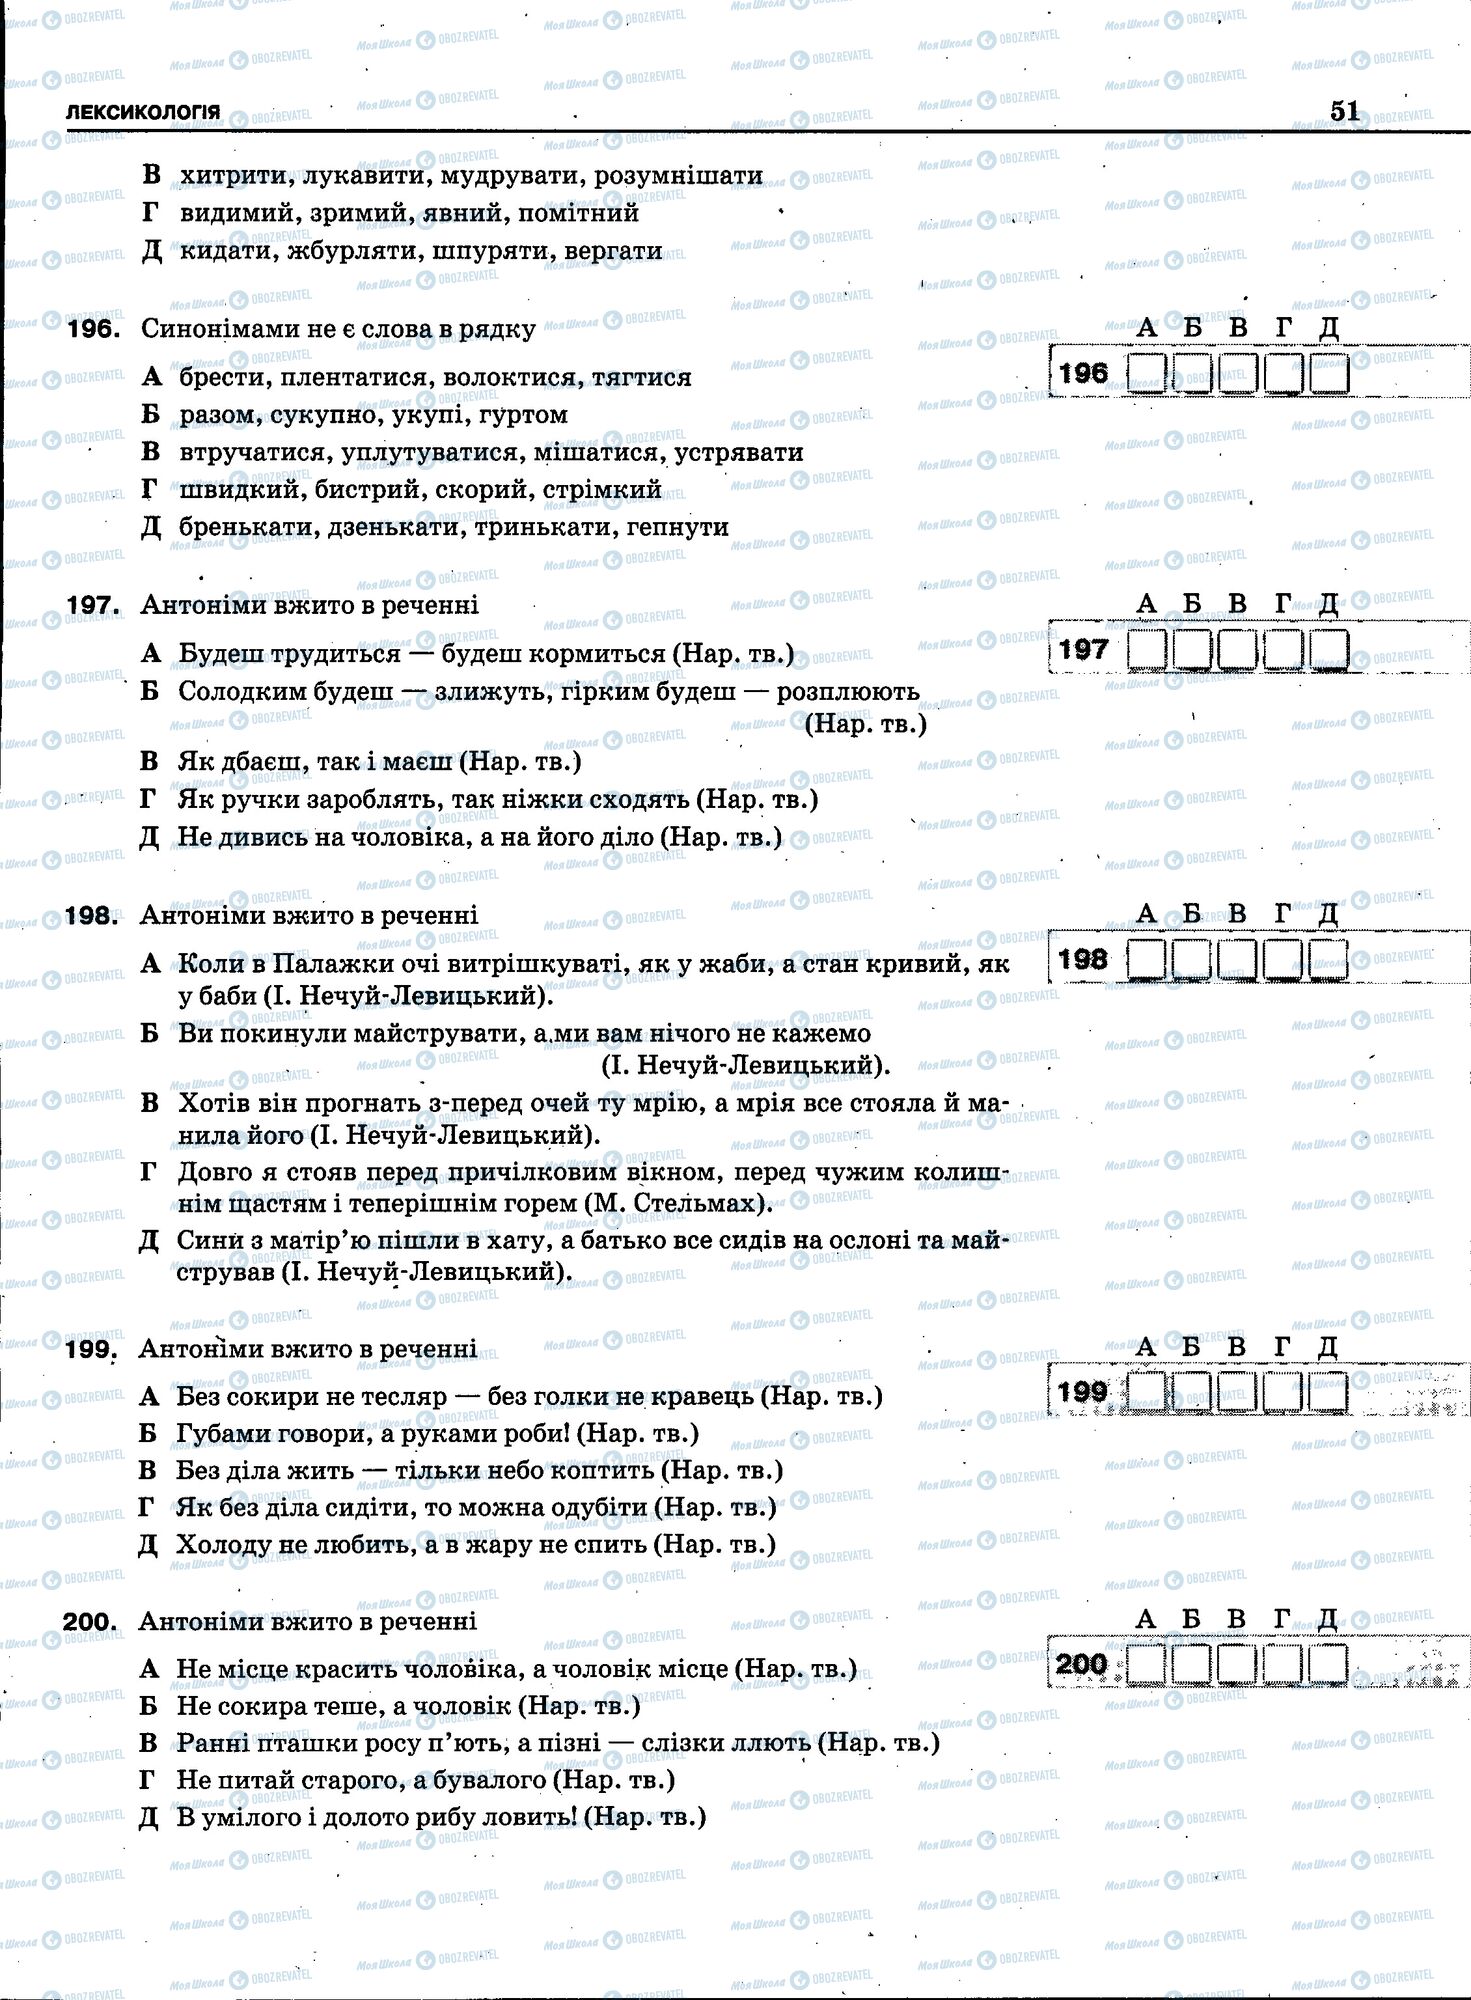 ЗНО Укр мова 11 класс страница 049